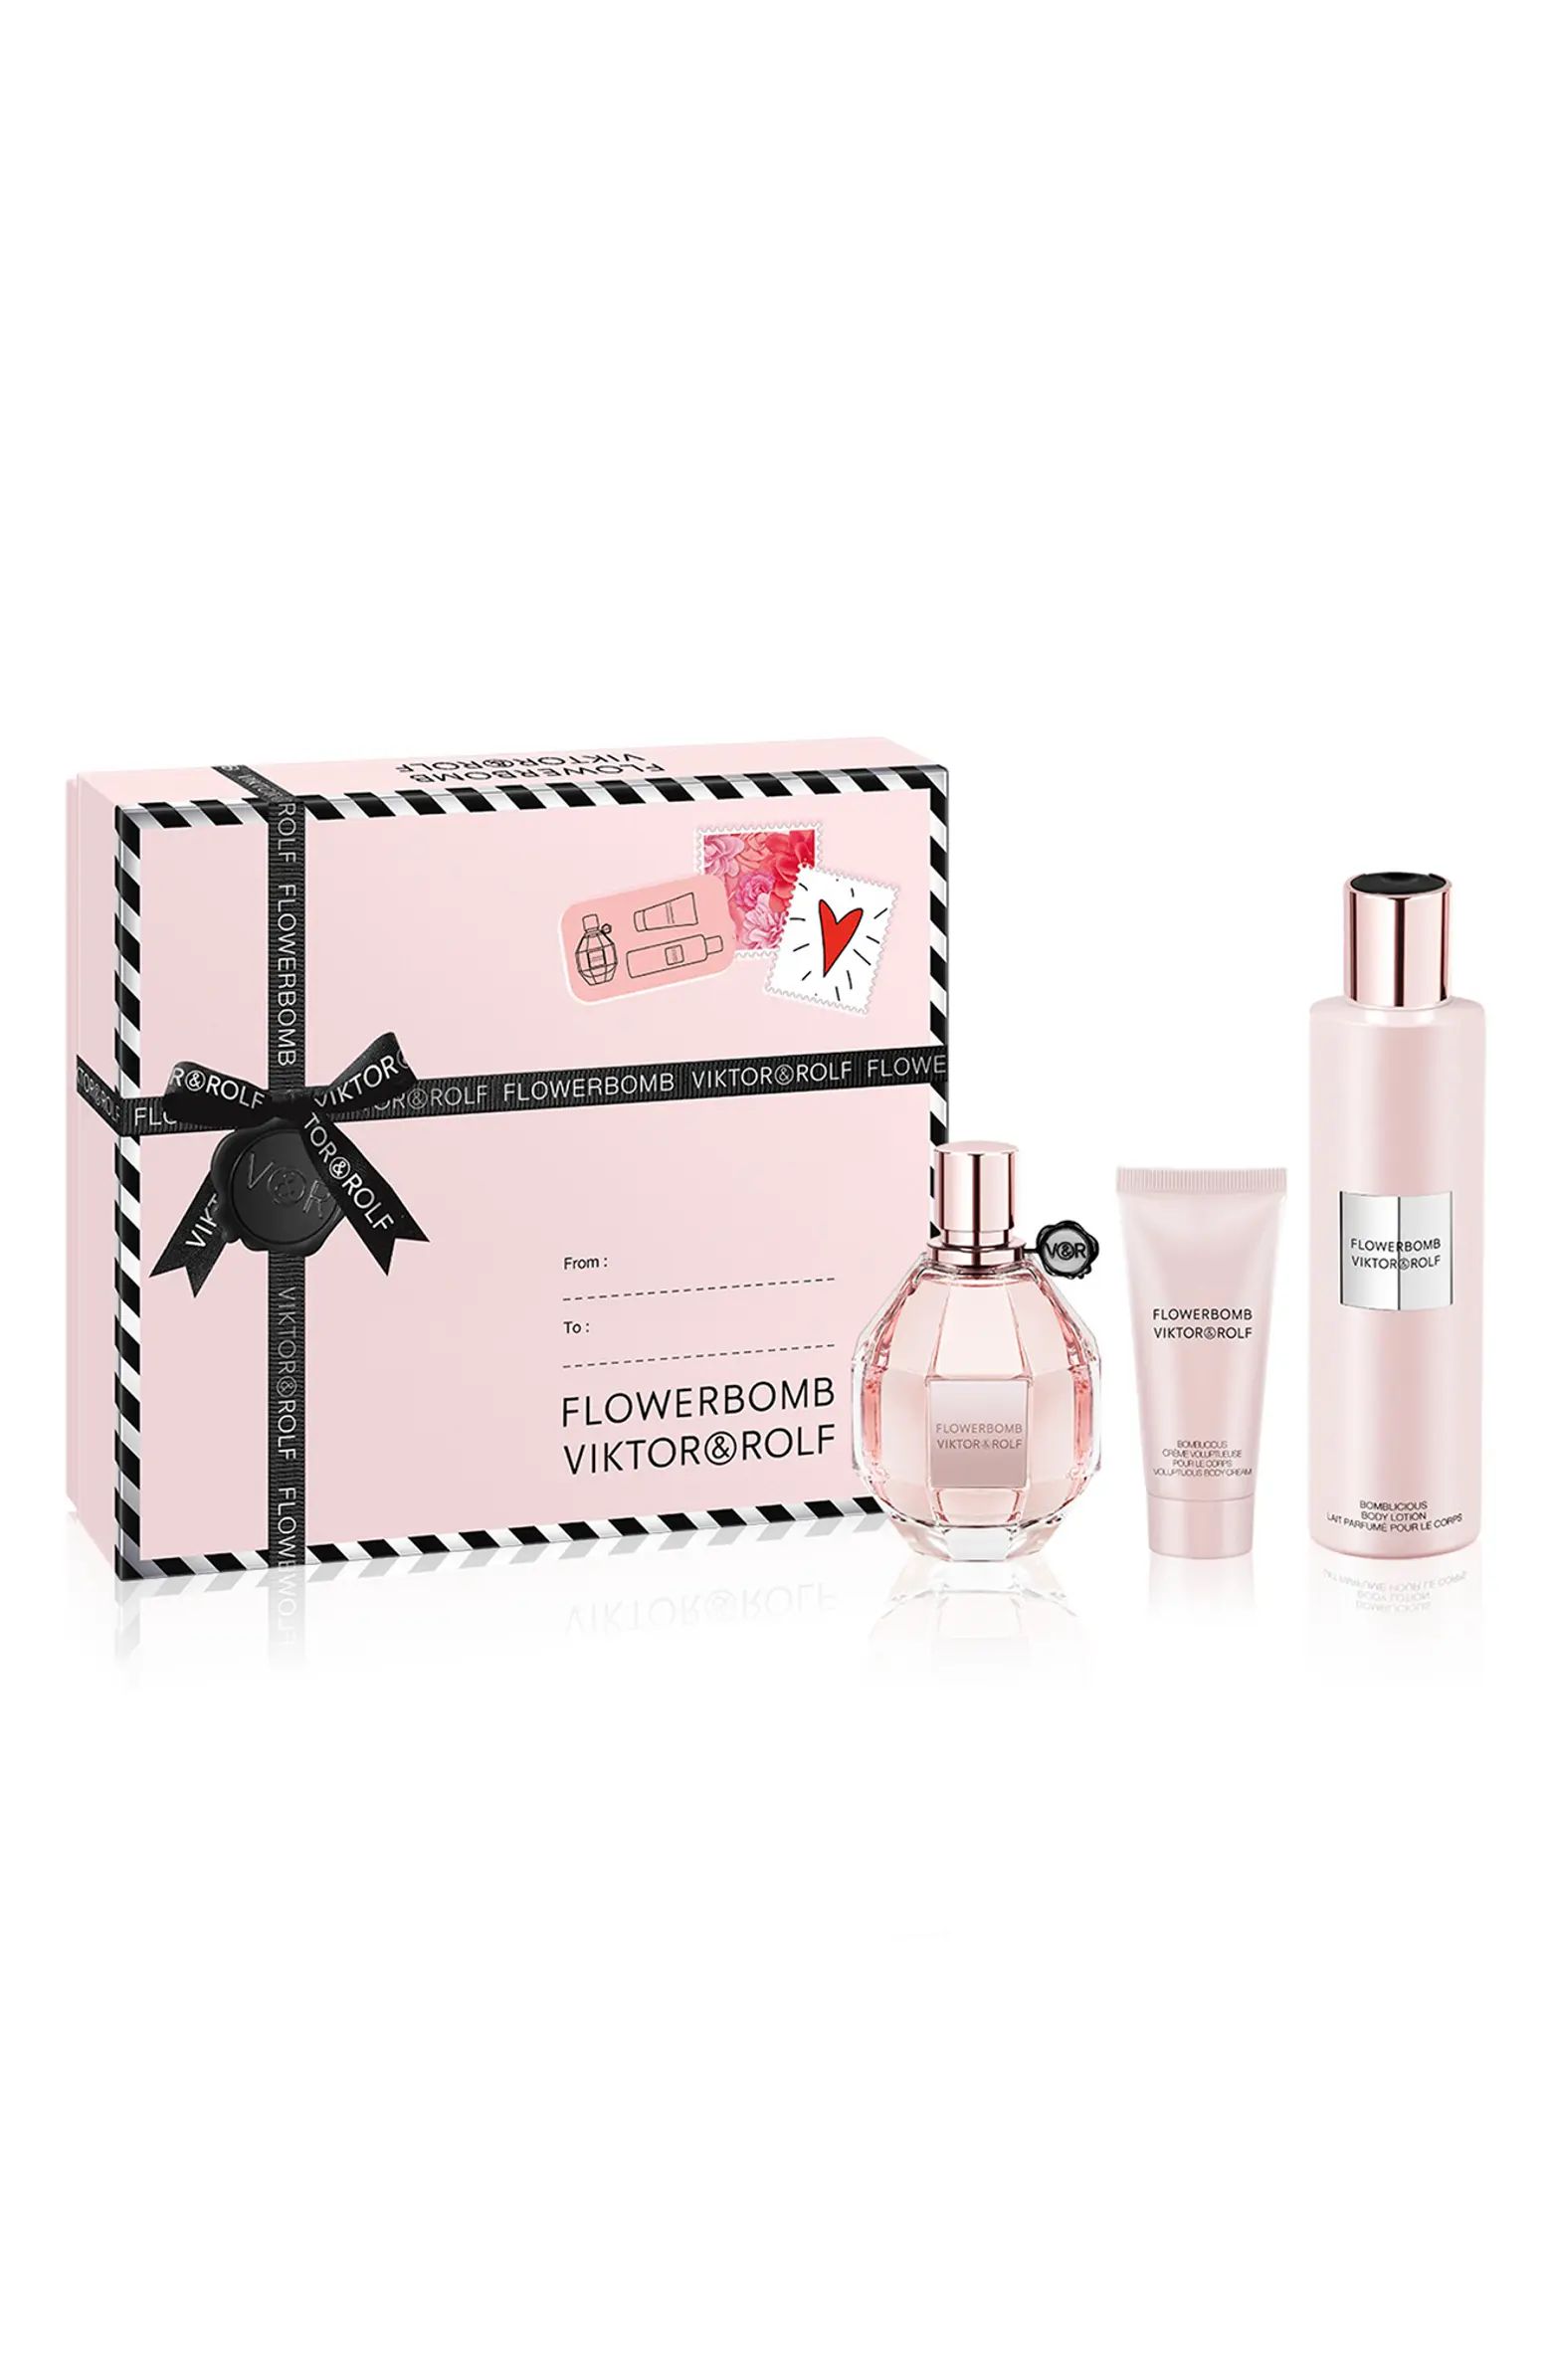 Flowerbomb Eau de Parfum Set $238 Value | Nordstrom